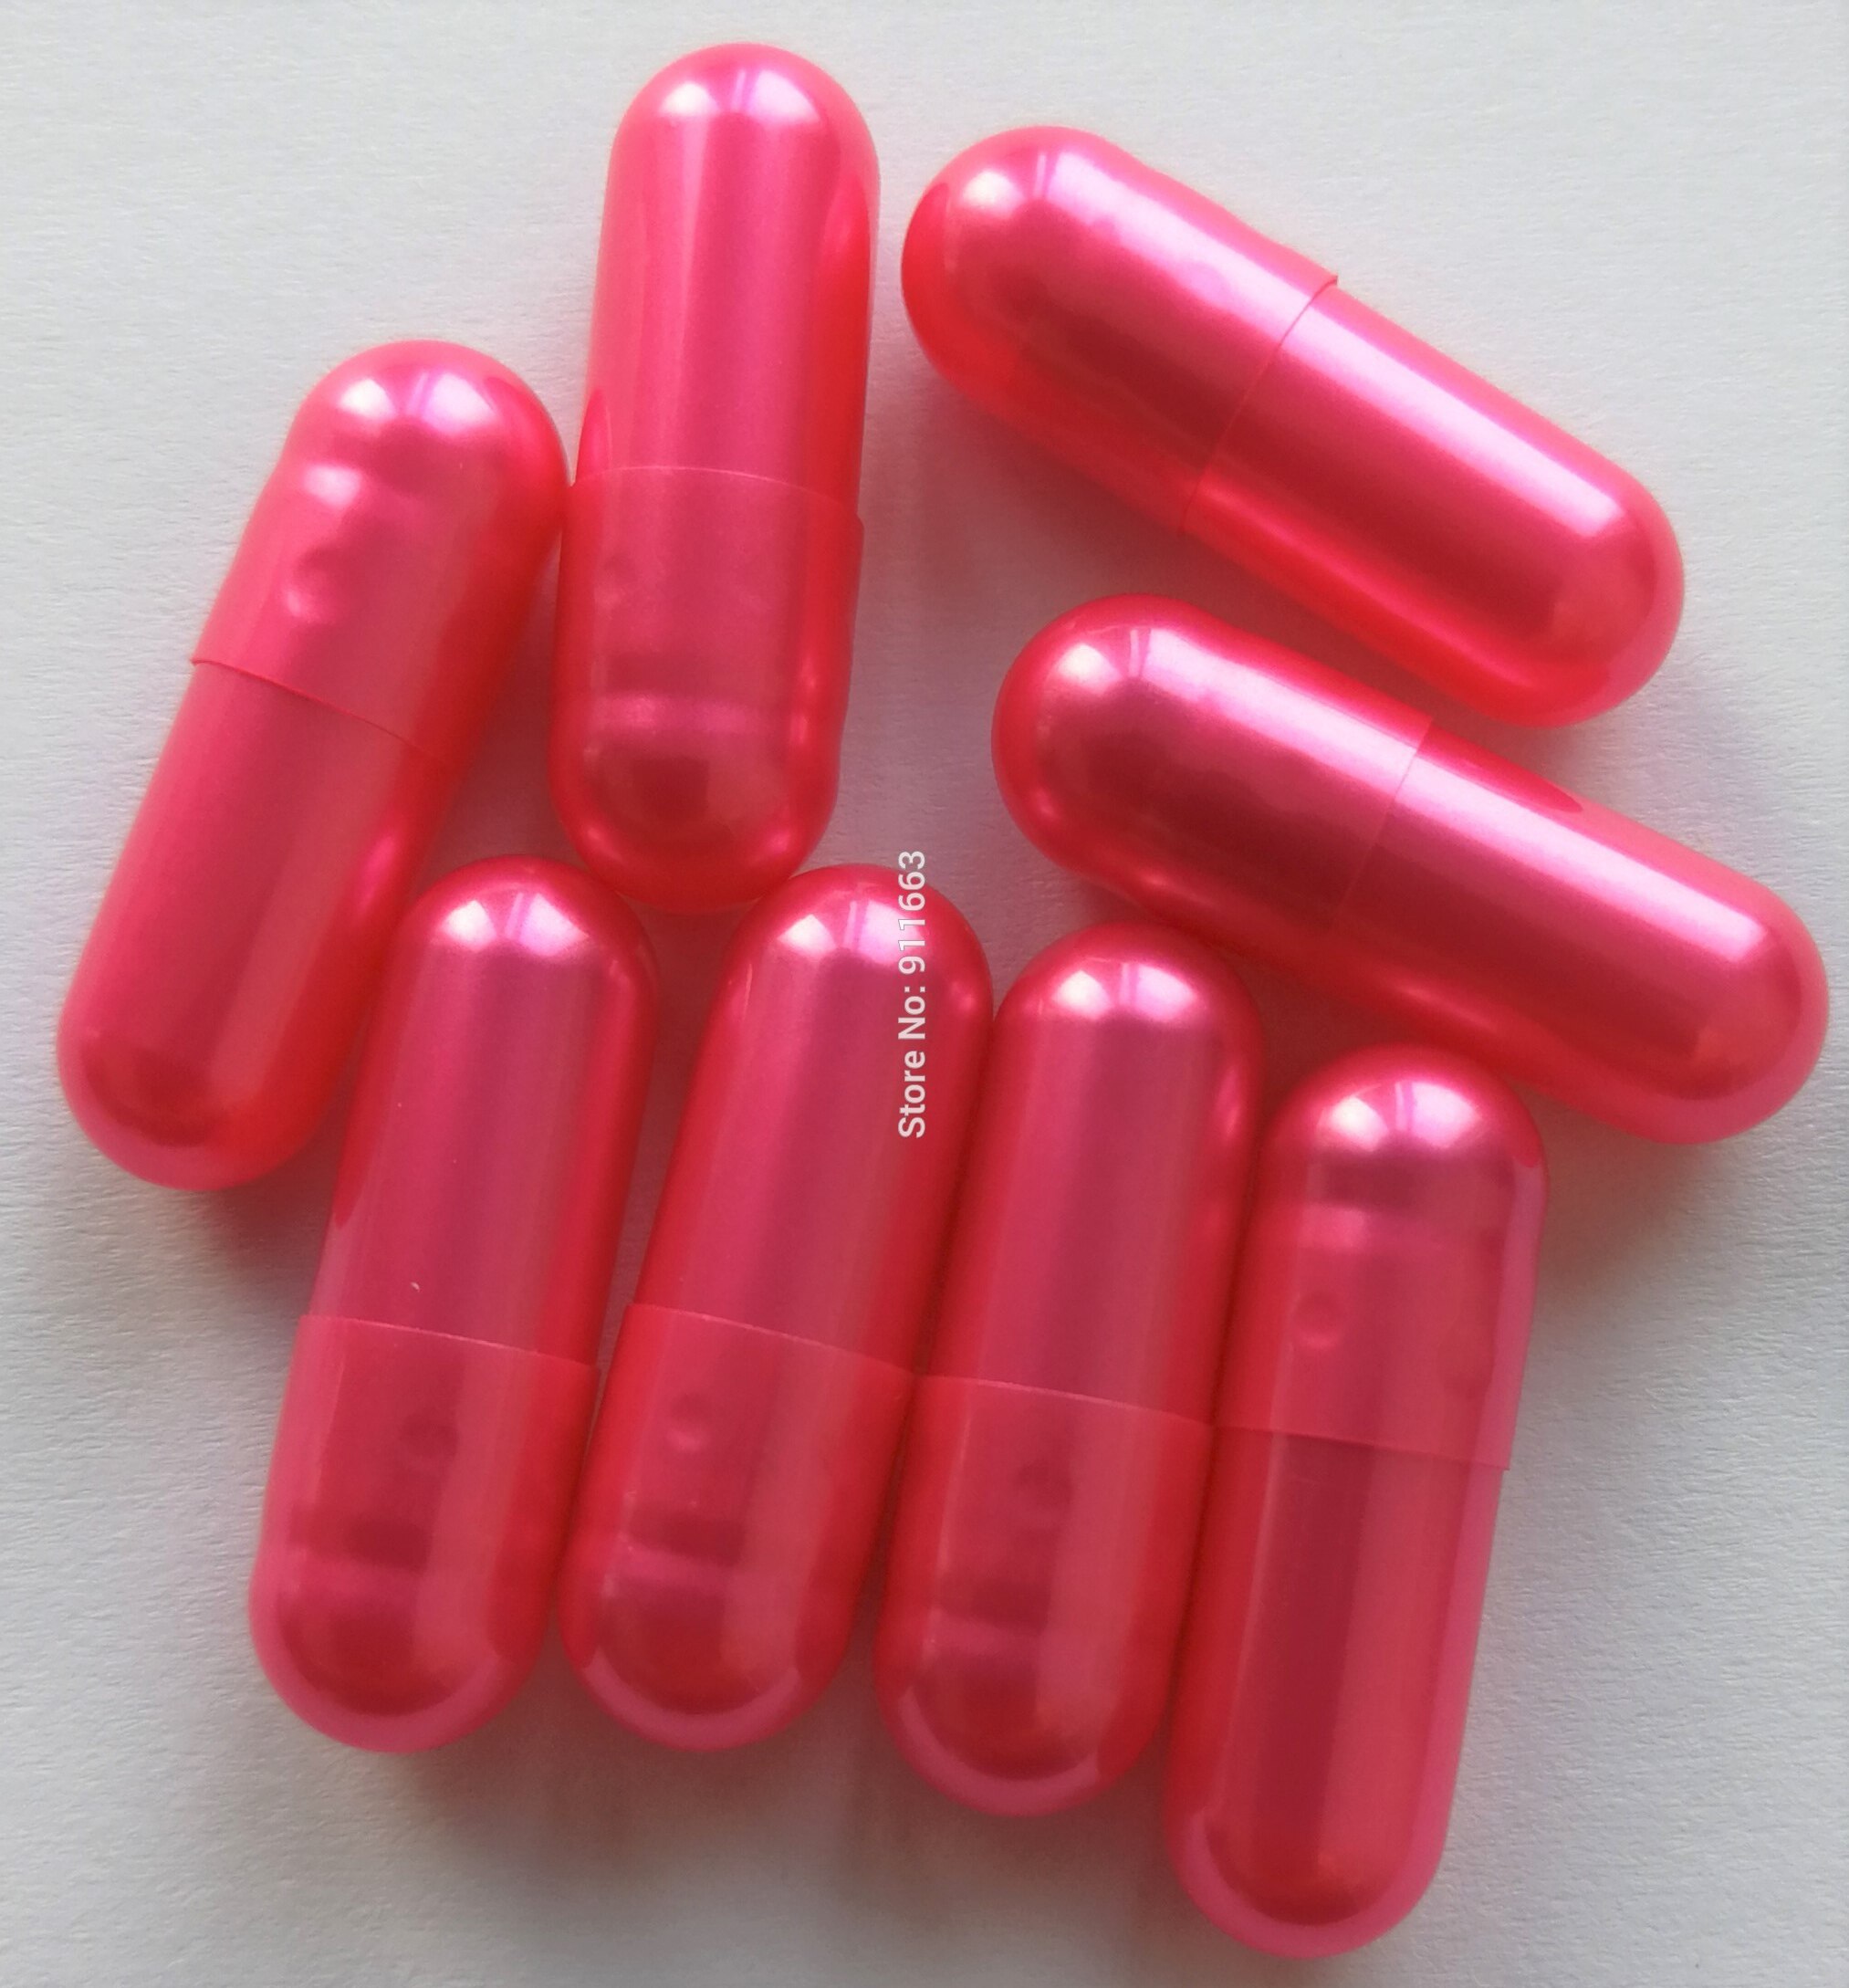 00# Pearl capsule 1,000pcs! Pearl colores Gelati empty capsules ,Hard gelatin empty capsule(joined or seperated empty capsules)!